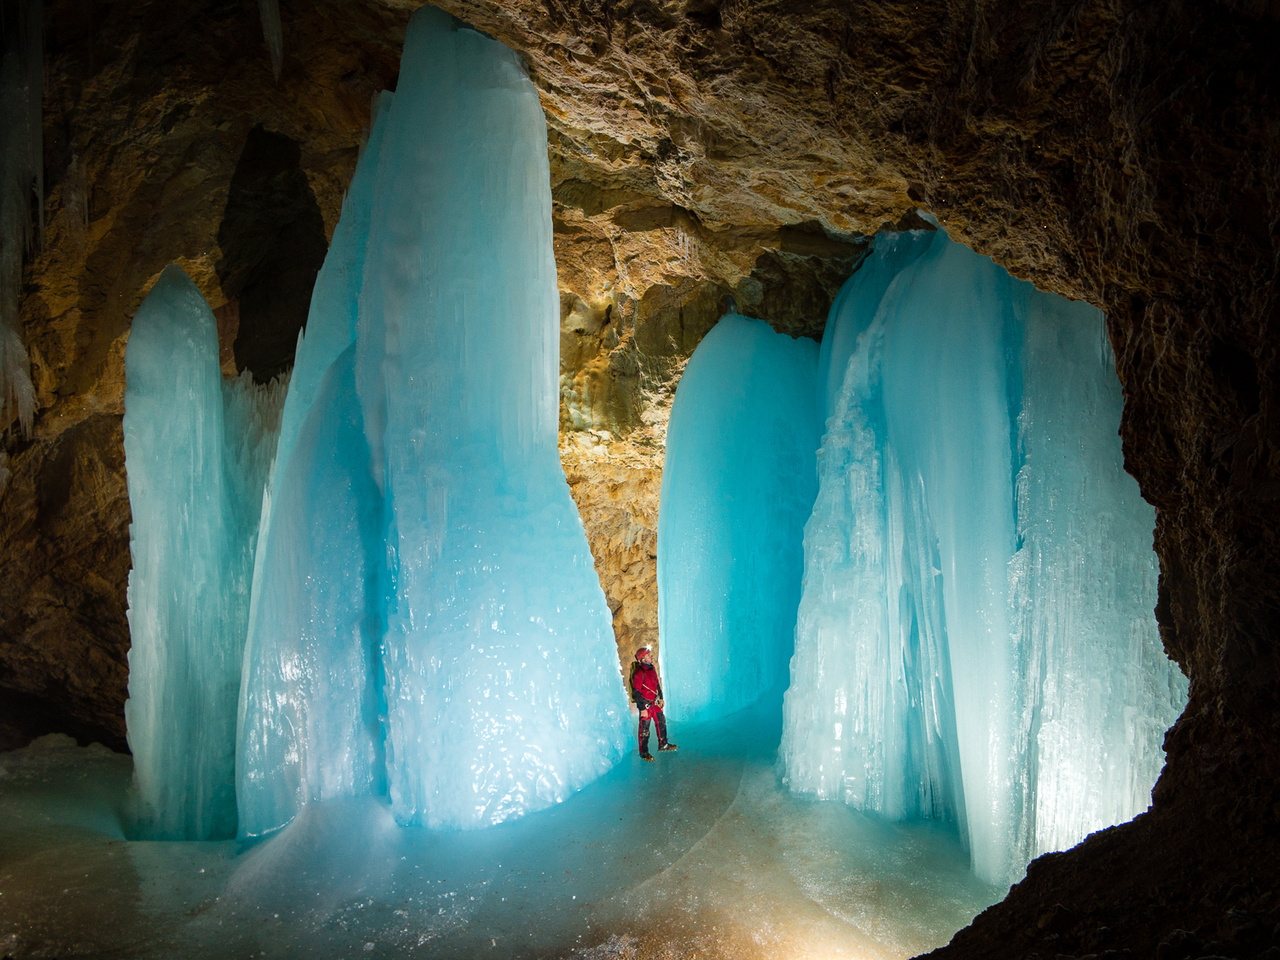 Az ausztriai Tennengebirge közel 2000 méter magasságban húzódó platója több jeges barlangot is rejt magában. Ezekben a barlangokban a változatos jégképződmények elsősorban a tavaszi hóolvadás során befolyó vizekből formálódnak, de sajnos évről évre itt is megfigyelhető a jégképződmények folyamatos csökkenése. 